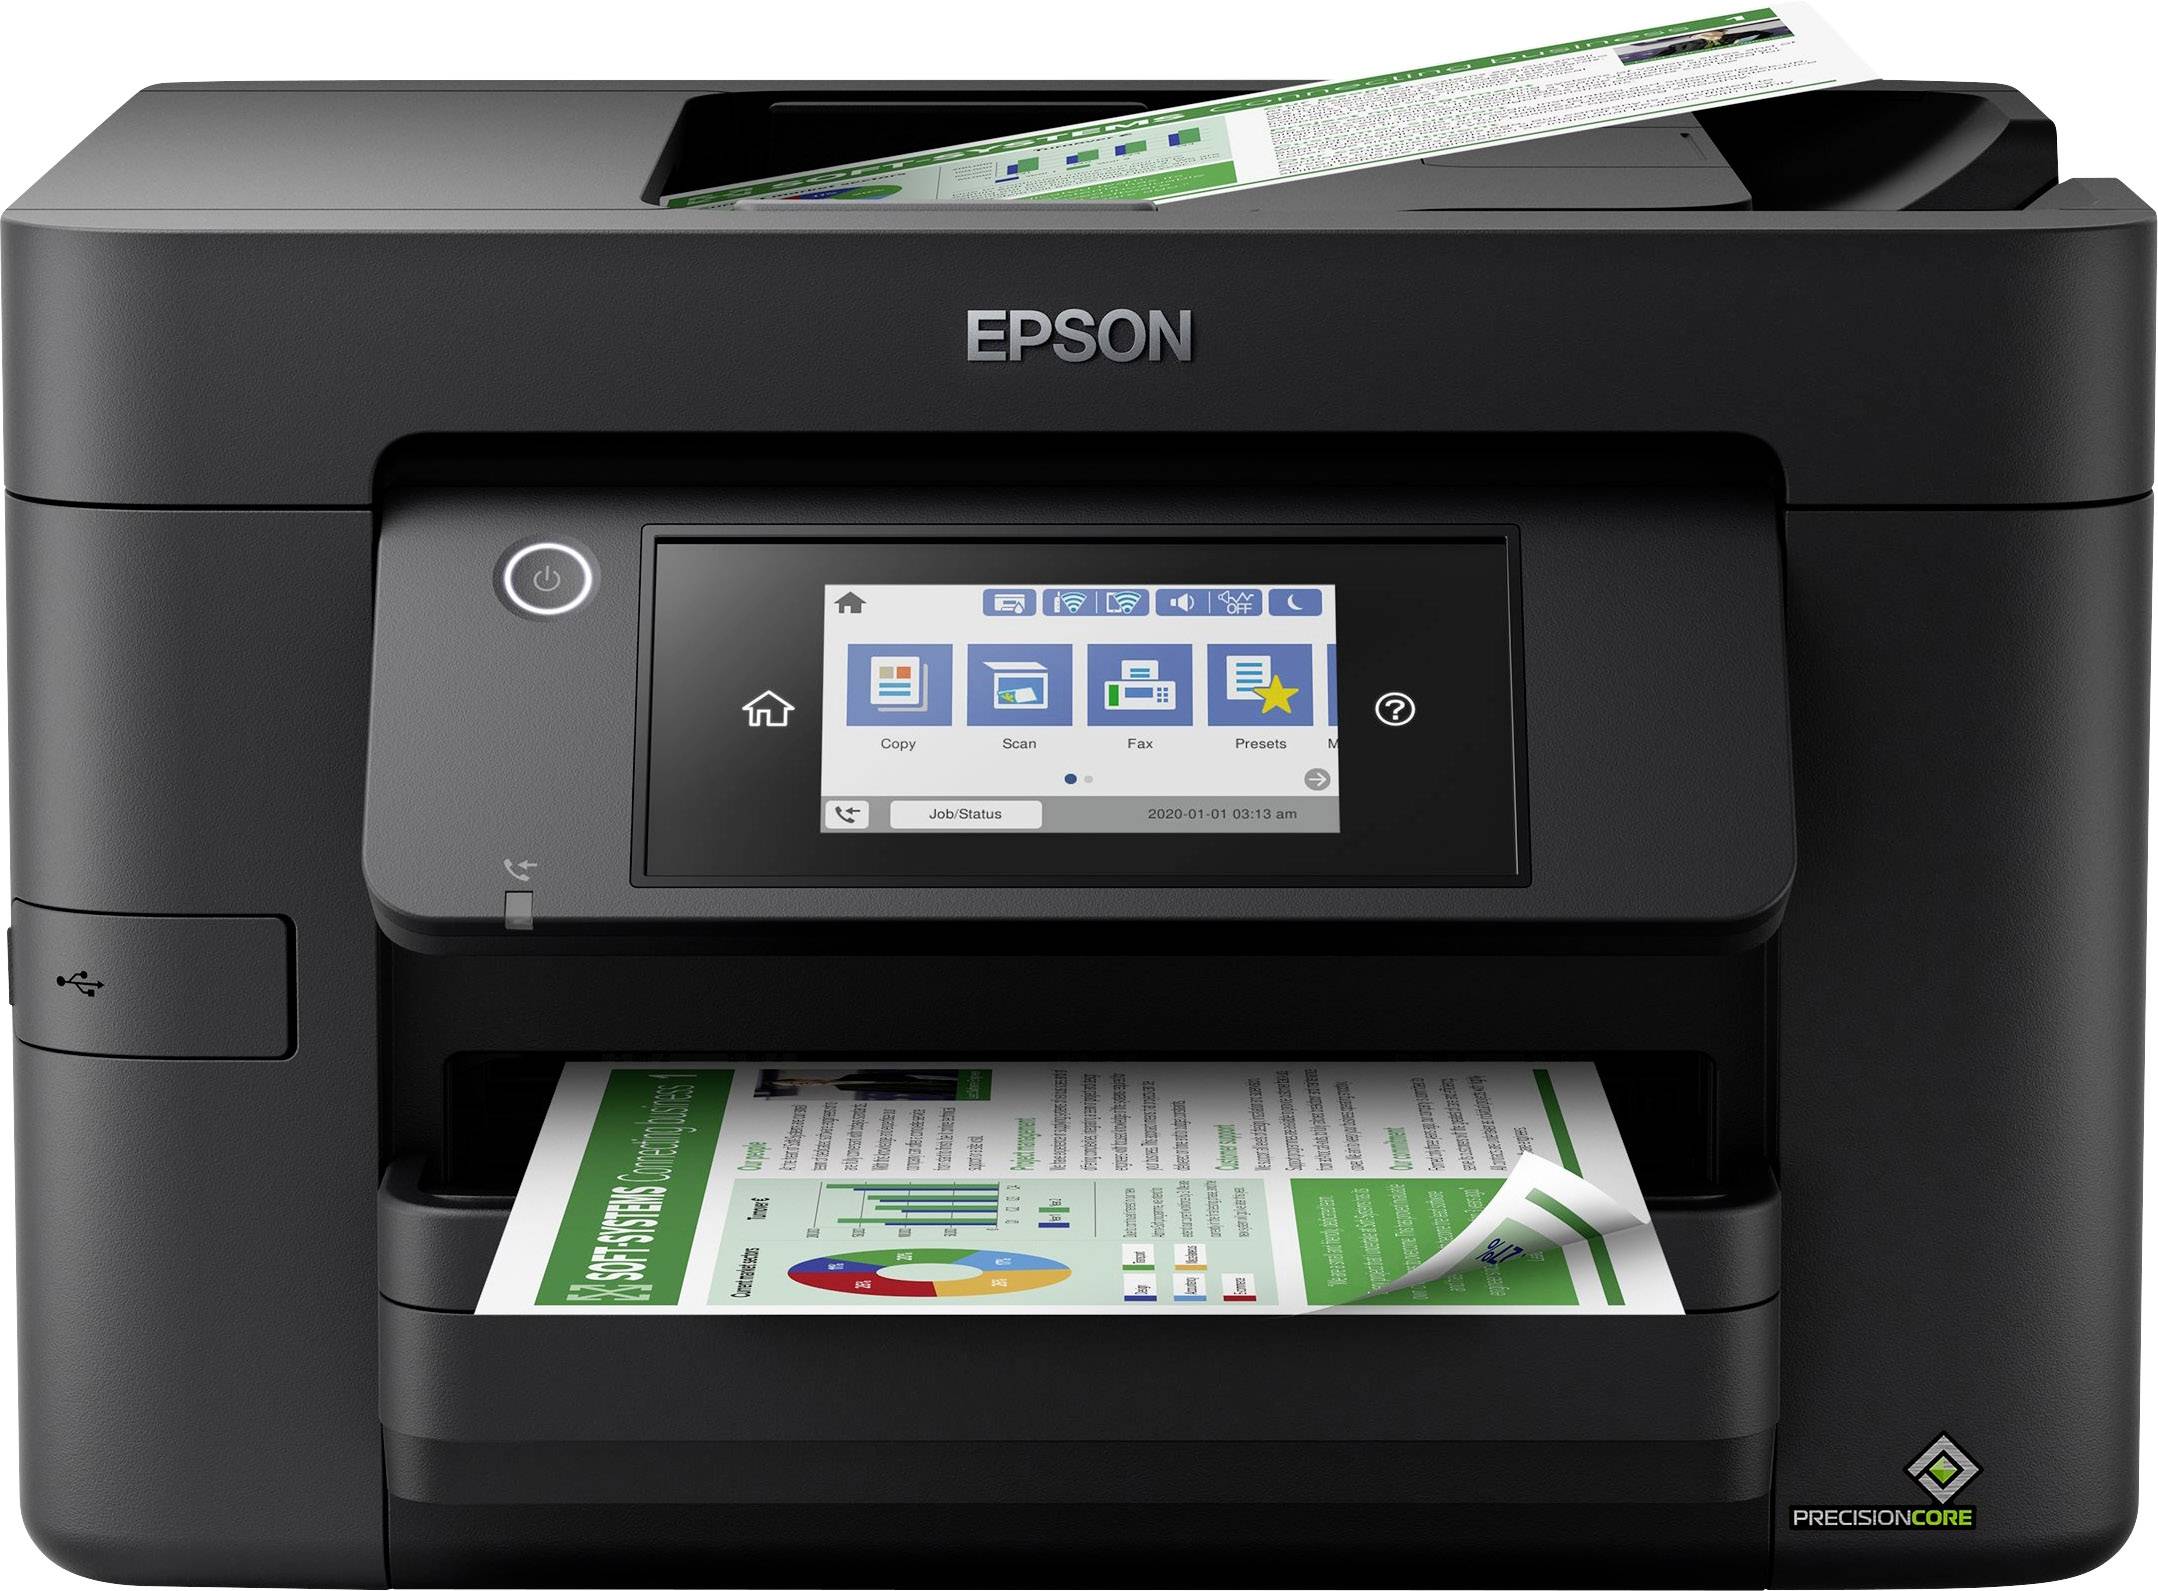 Epson WorkForce Pro WF-4820DWF Kopierer, kaufen A4 Tintenstrahl-Multifunktionsdrucker USB, Scanner, Fax Drucker, LAN, Duplex